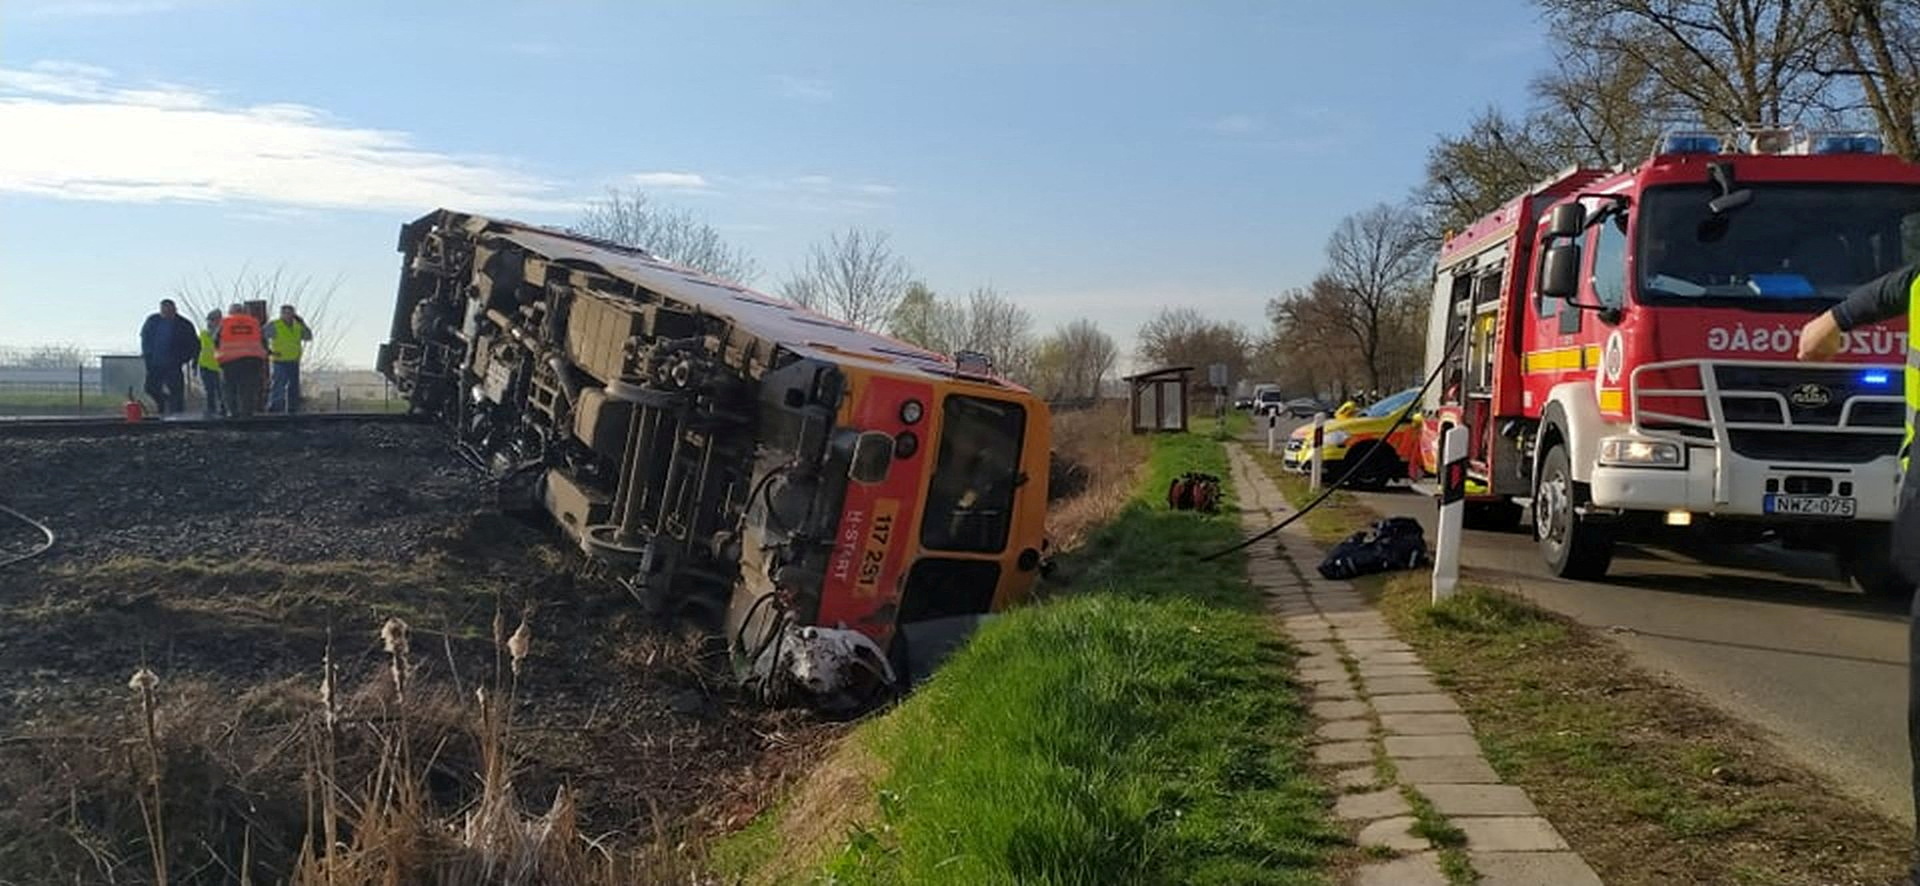 Ουγγαρία: Φορτηγό συγκρούστηκε με τρένο – Τουλάχιστον 5 νεκροί